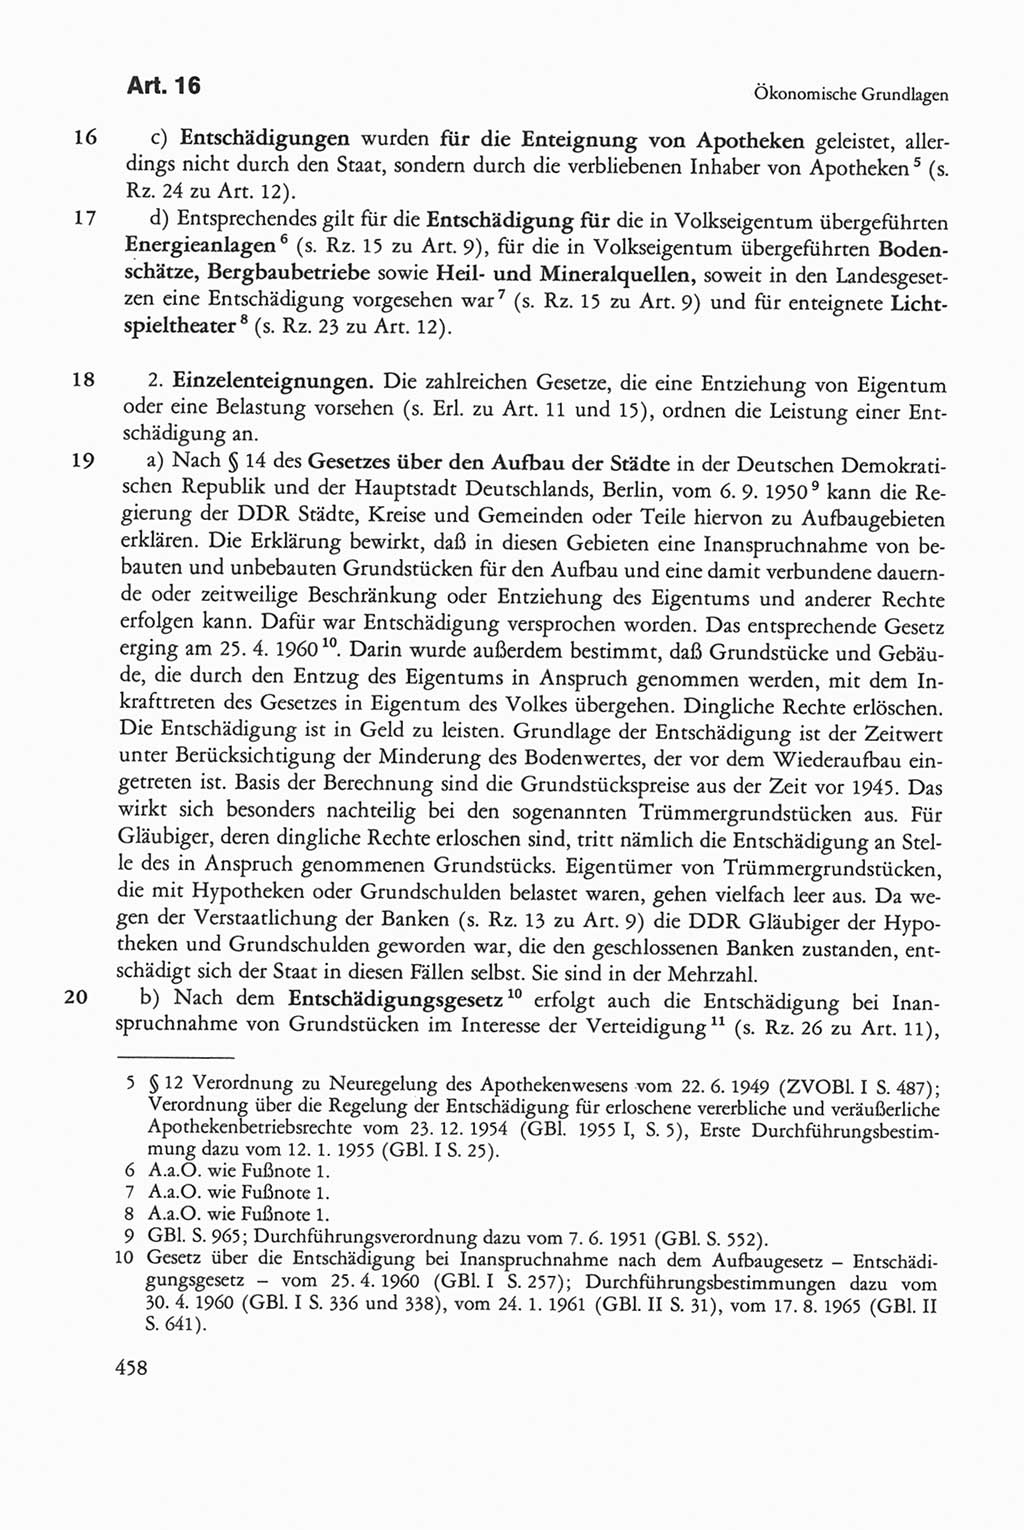 Die sozialistische Verfassung der Deutschen Demokratischen Republik (DDR), Kommentar mit einem Nachtrag 1997, Seite 458 (Soz. Verf. DDR Komm. Nachtr. 1997, S. 458)